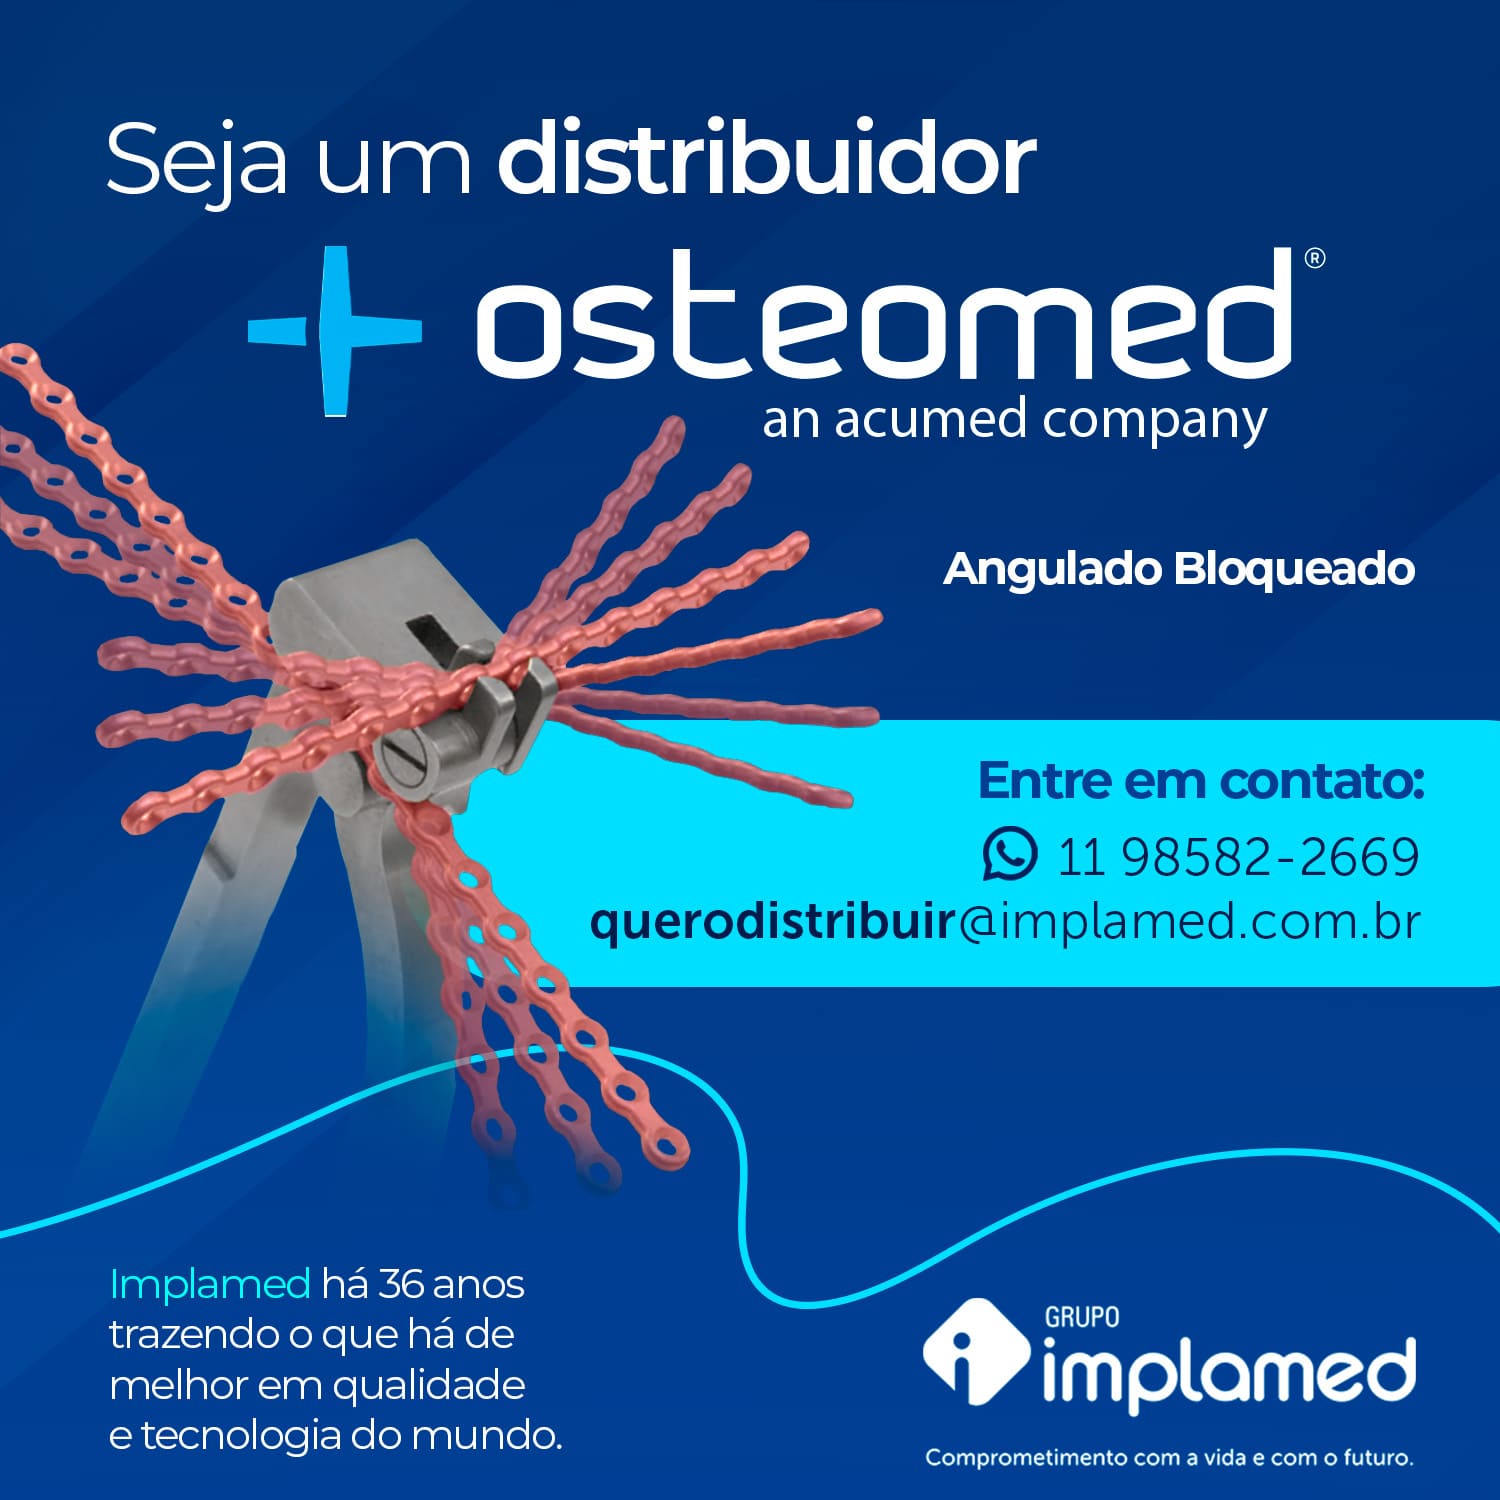 Seja um distribuidor - Osteomed Angulado